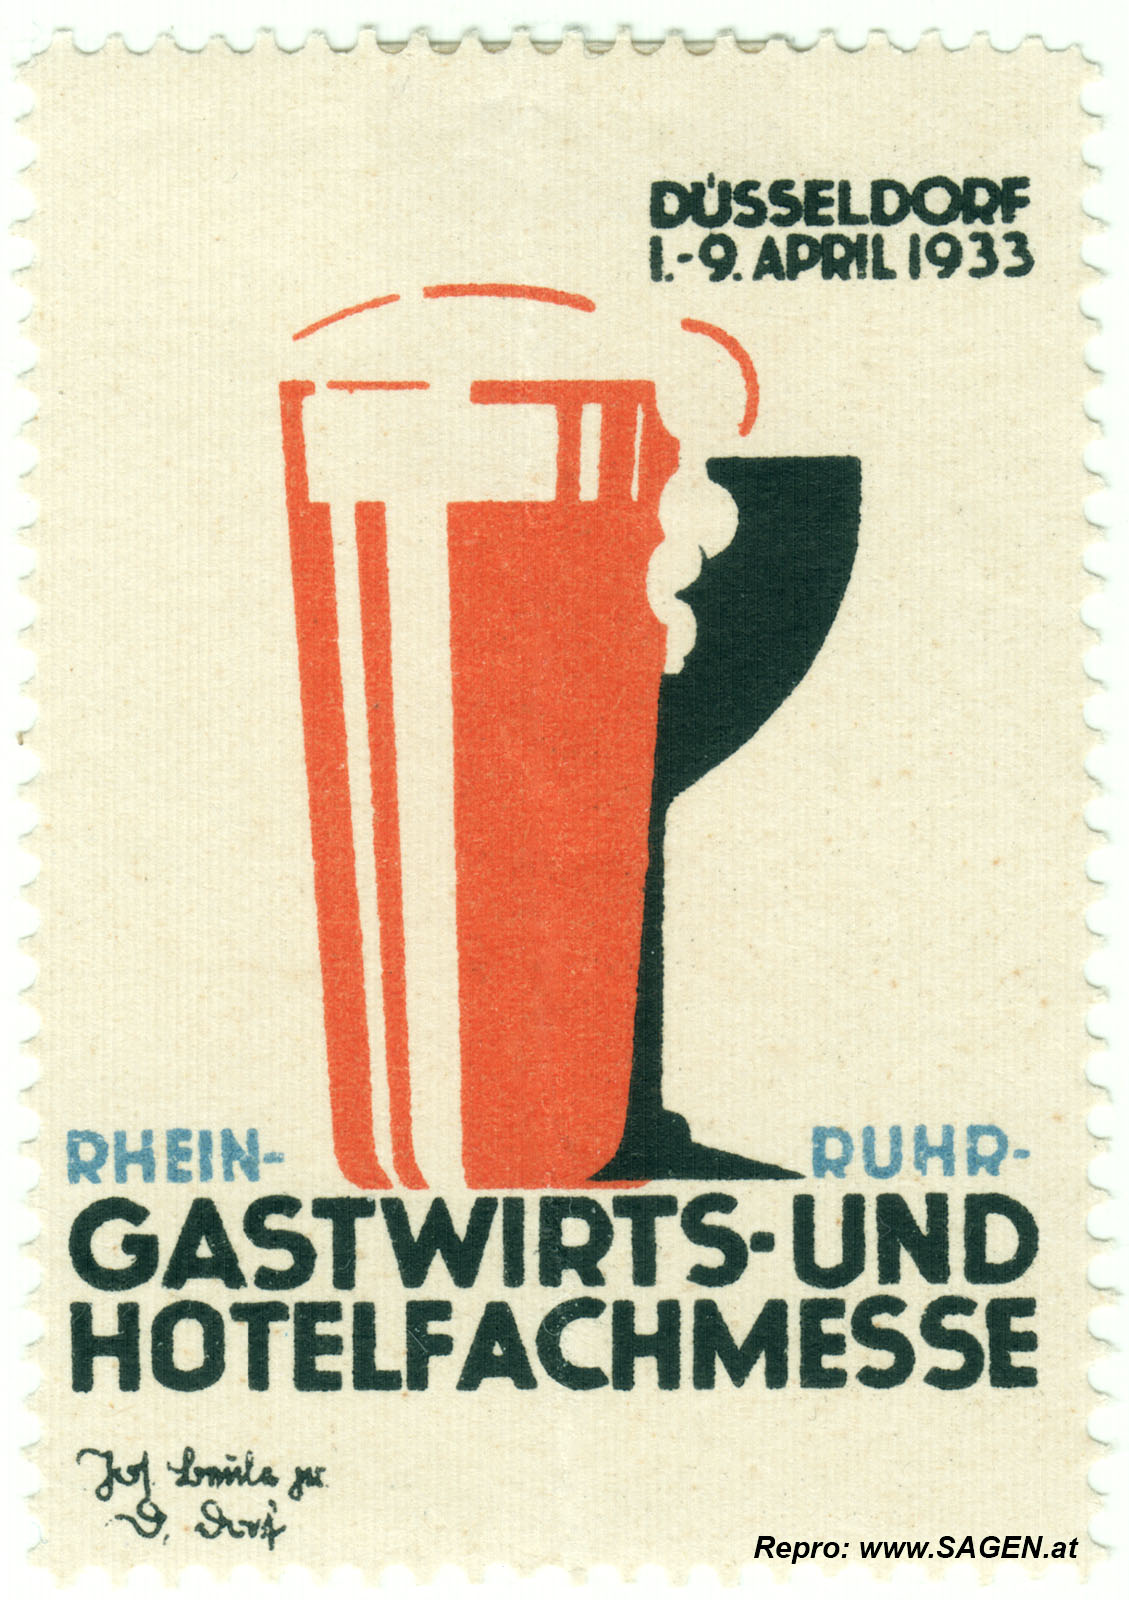 Gastwirts- und Hotelfachmesse Düsseldorf 1933